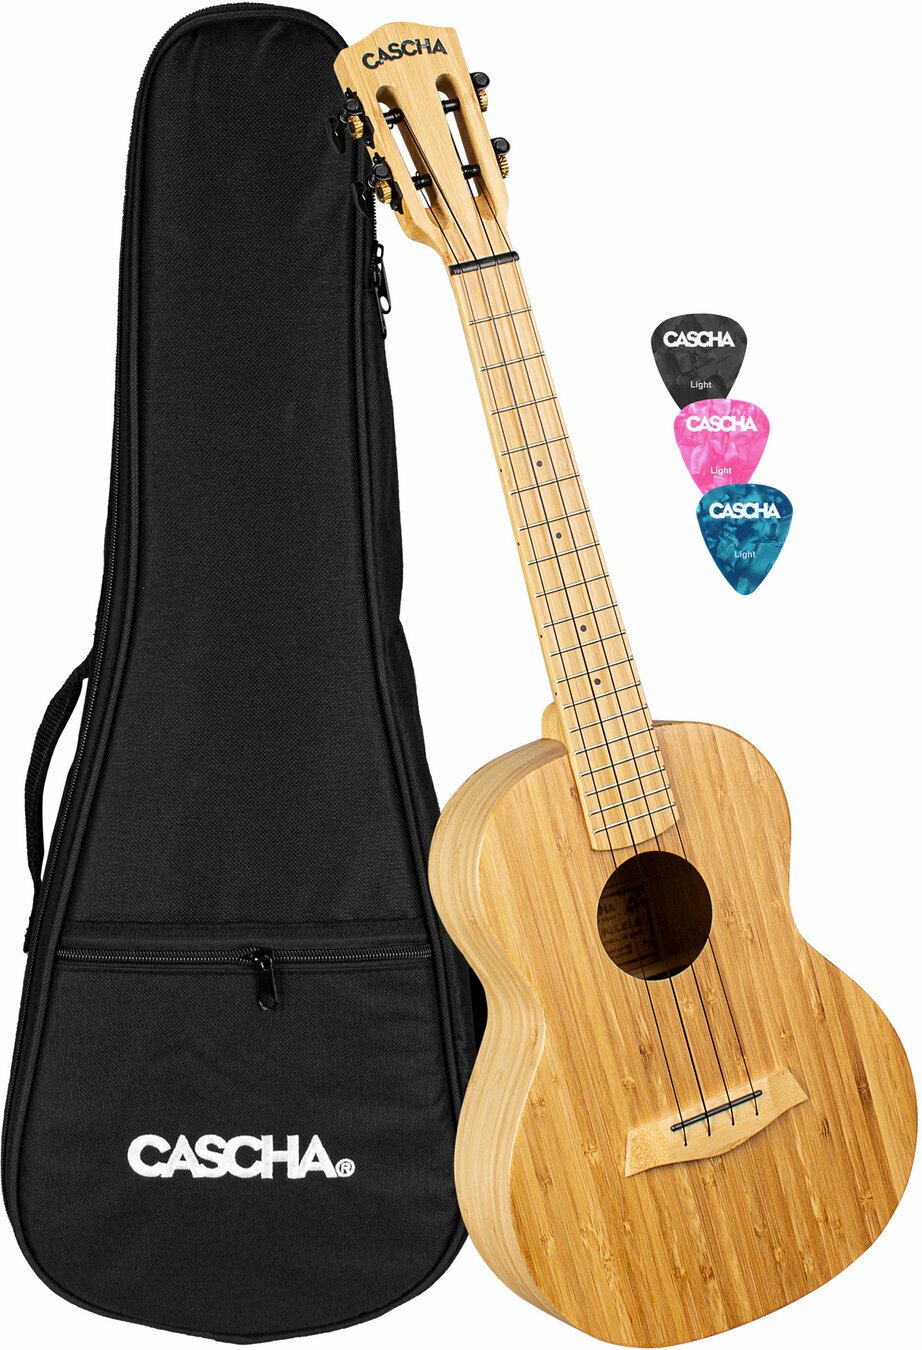 Tenor ukulele Cascha HH 2314 Bamboo Tenor ukulele Natural